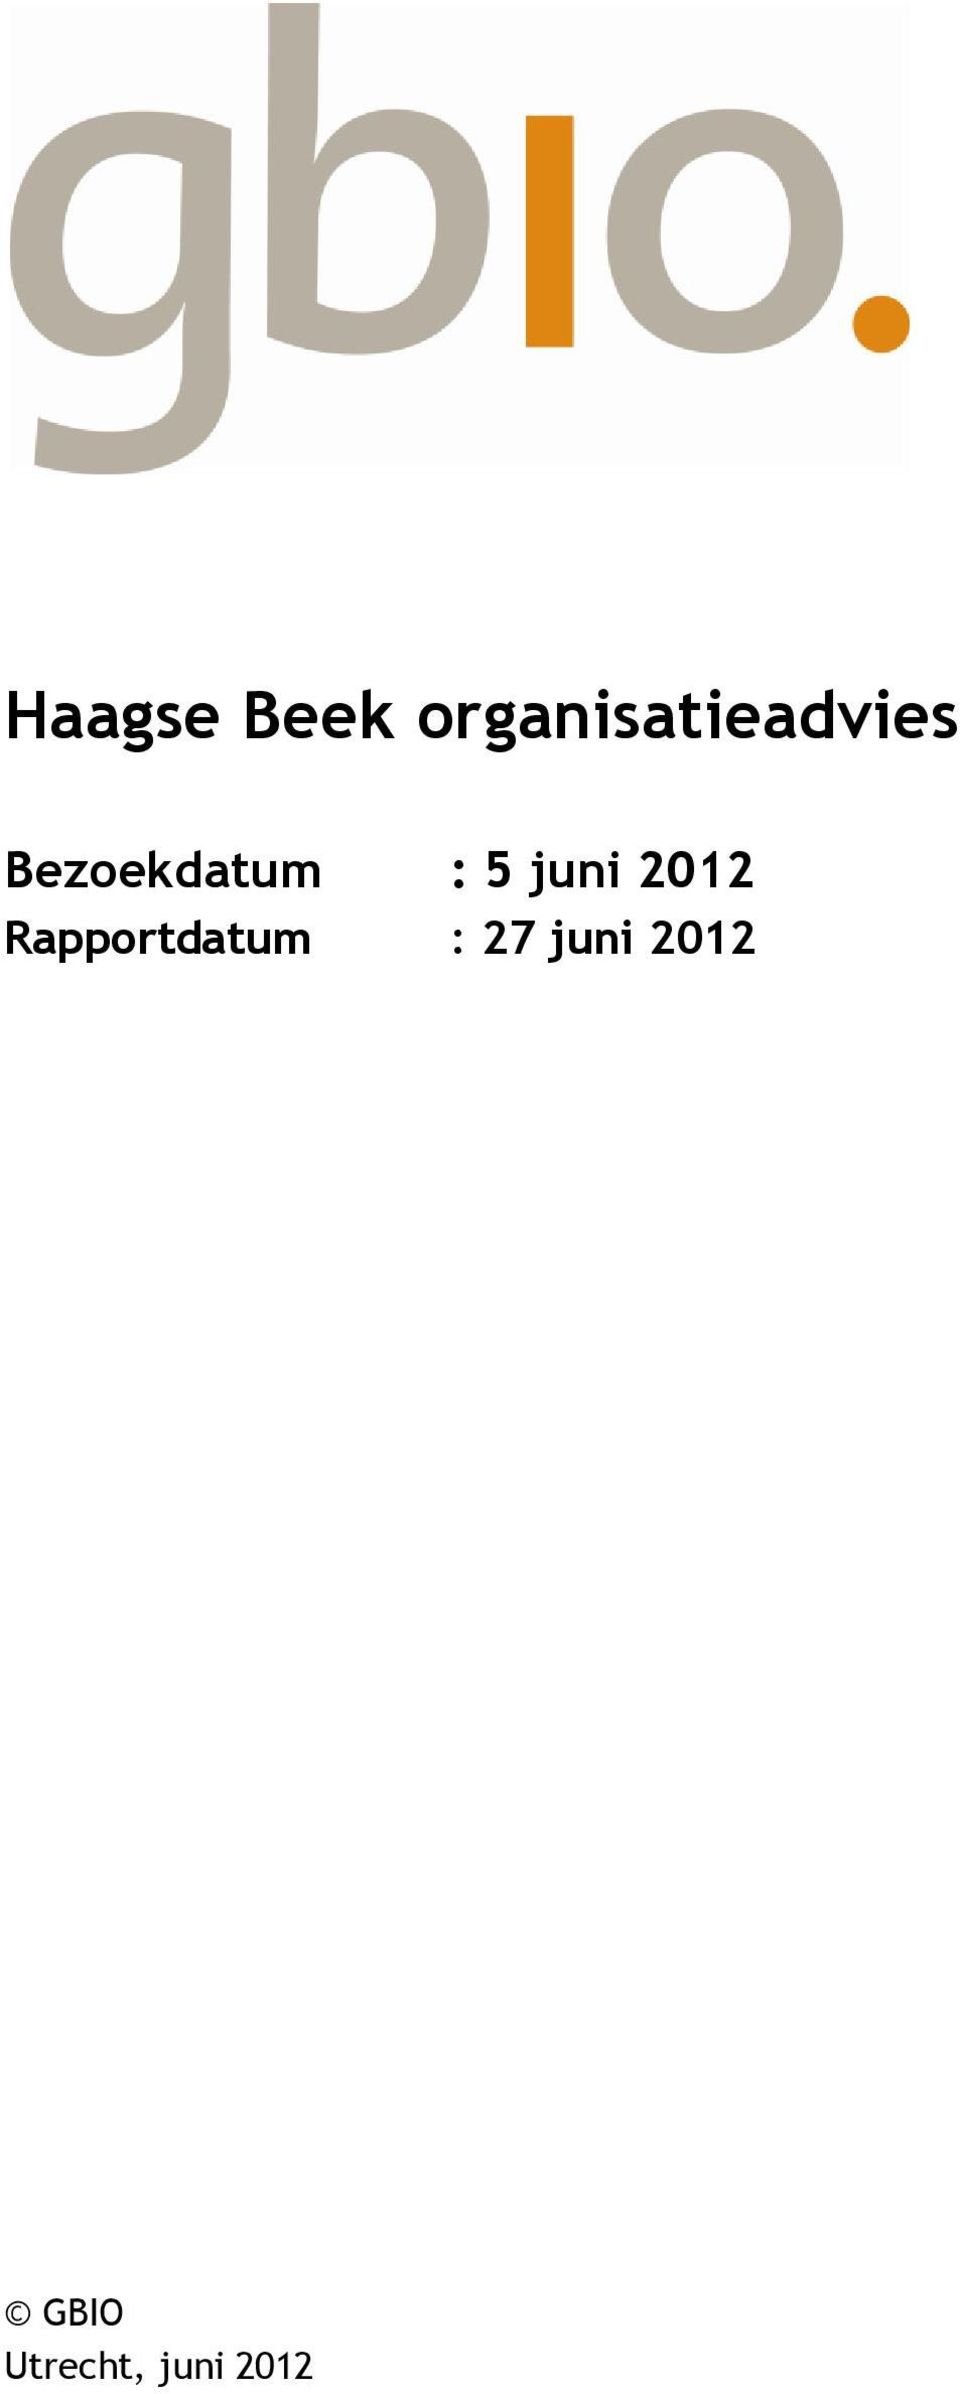 Bezoekdatum : 5 juni 2012